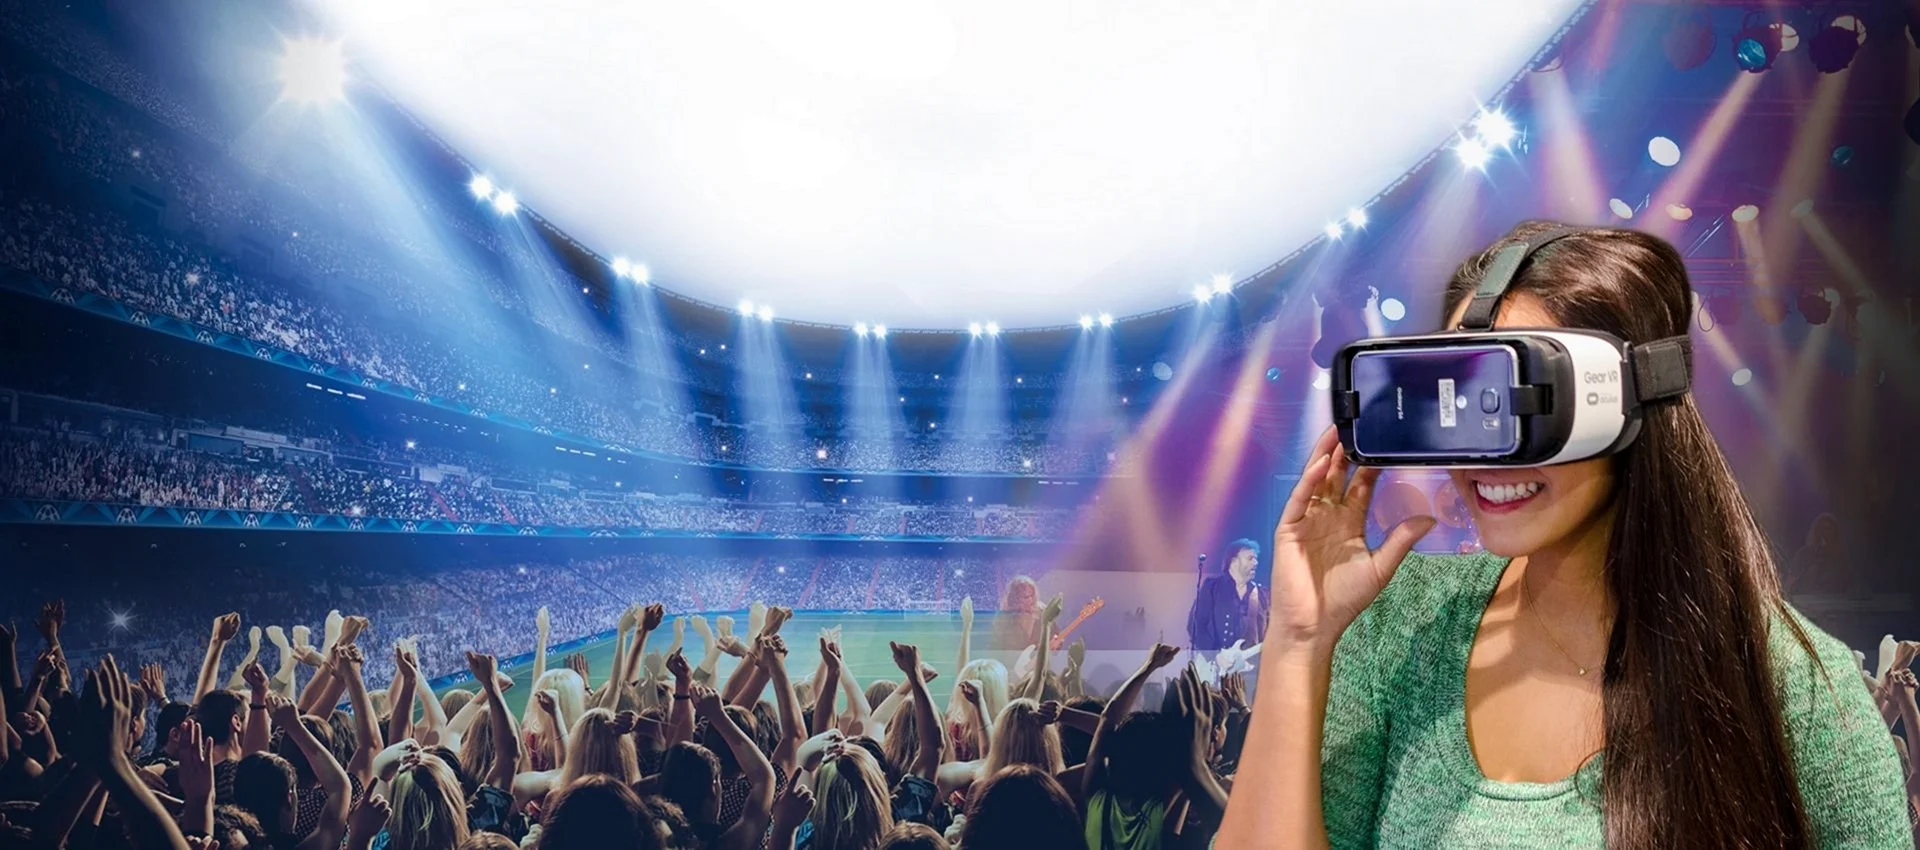 Концерт в виртуальной реальности